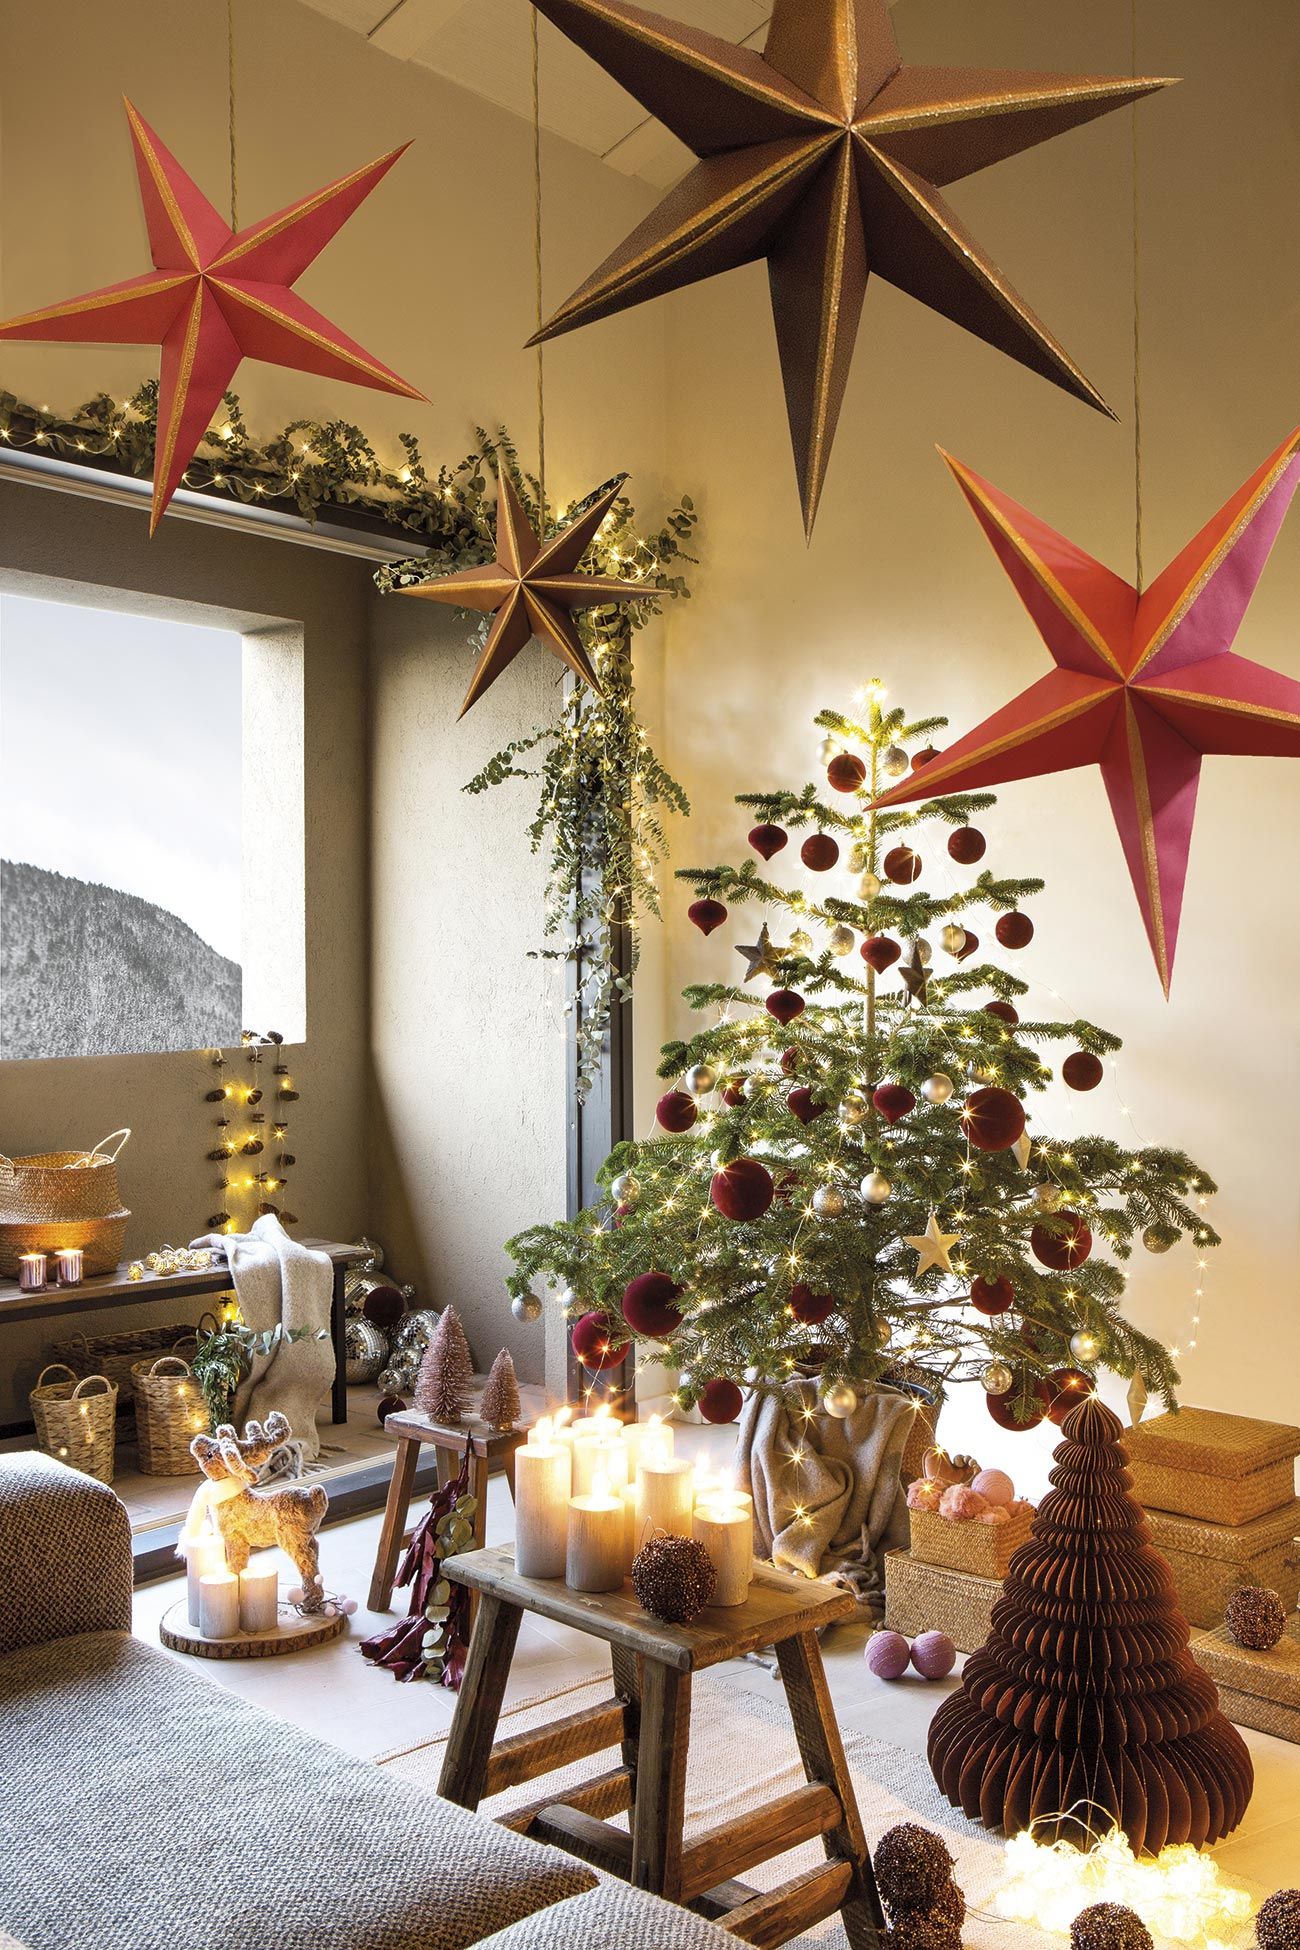 barato Bonito Peatonal 30 adornos navideños e ideas para decorar la casa en Navidad